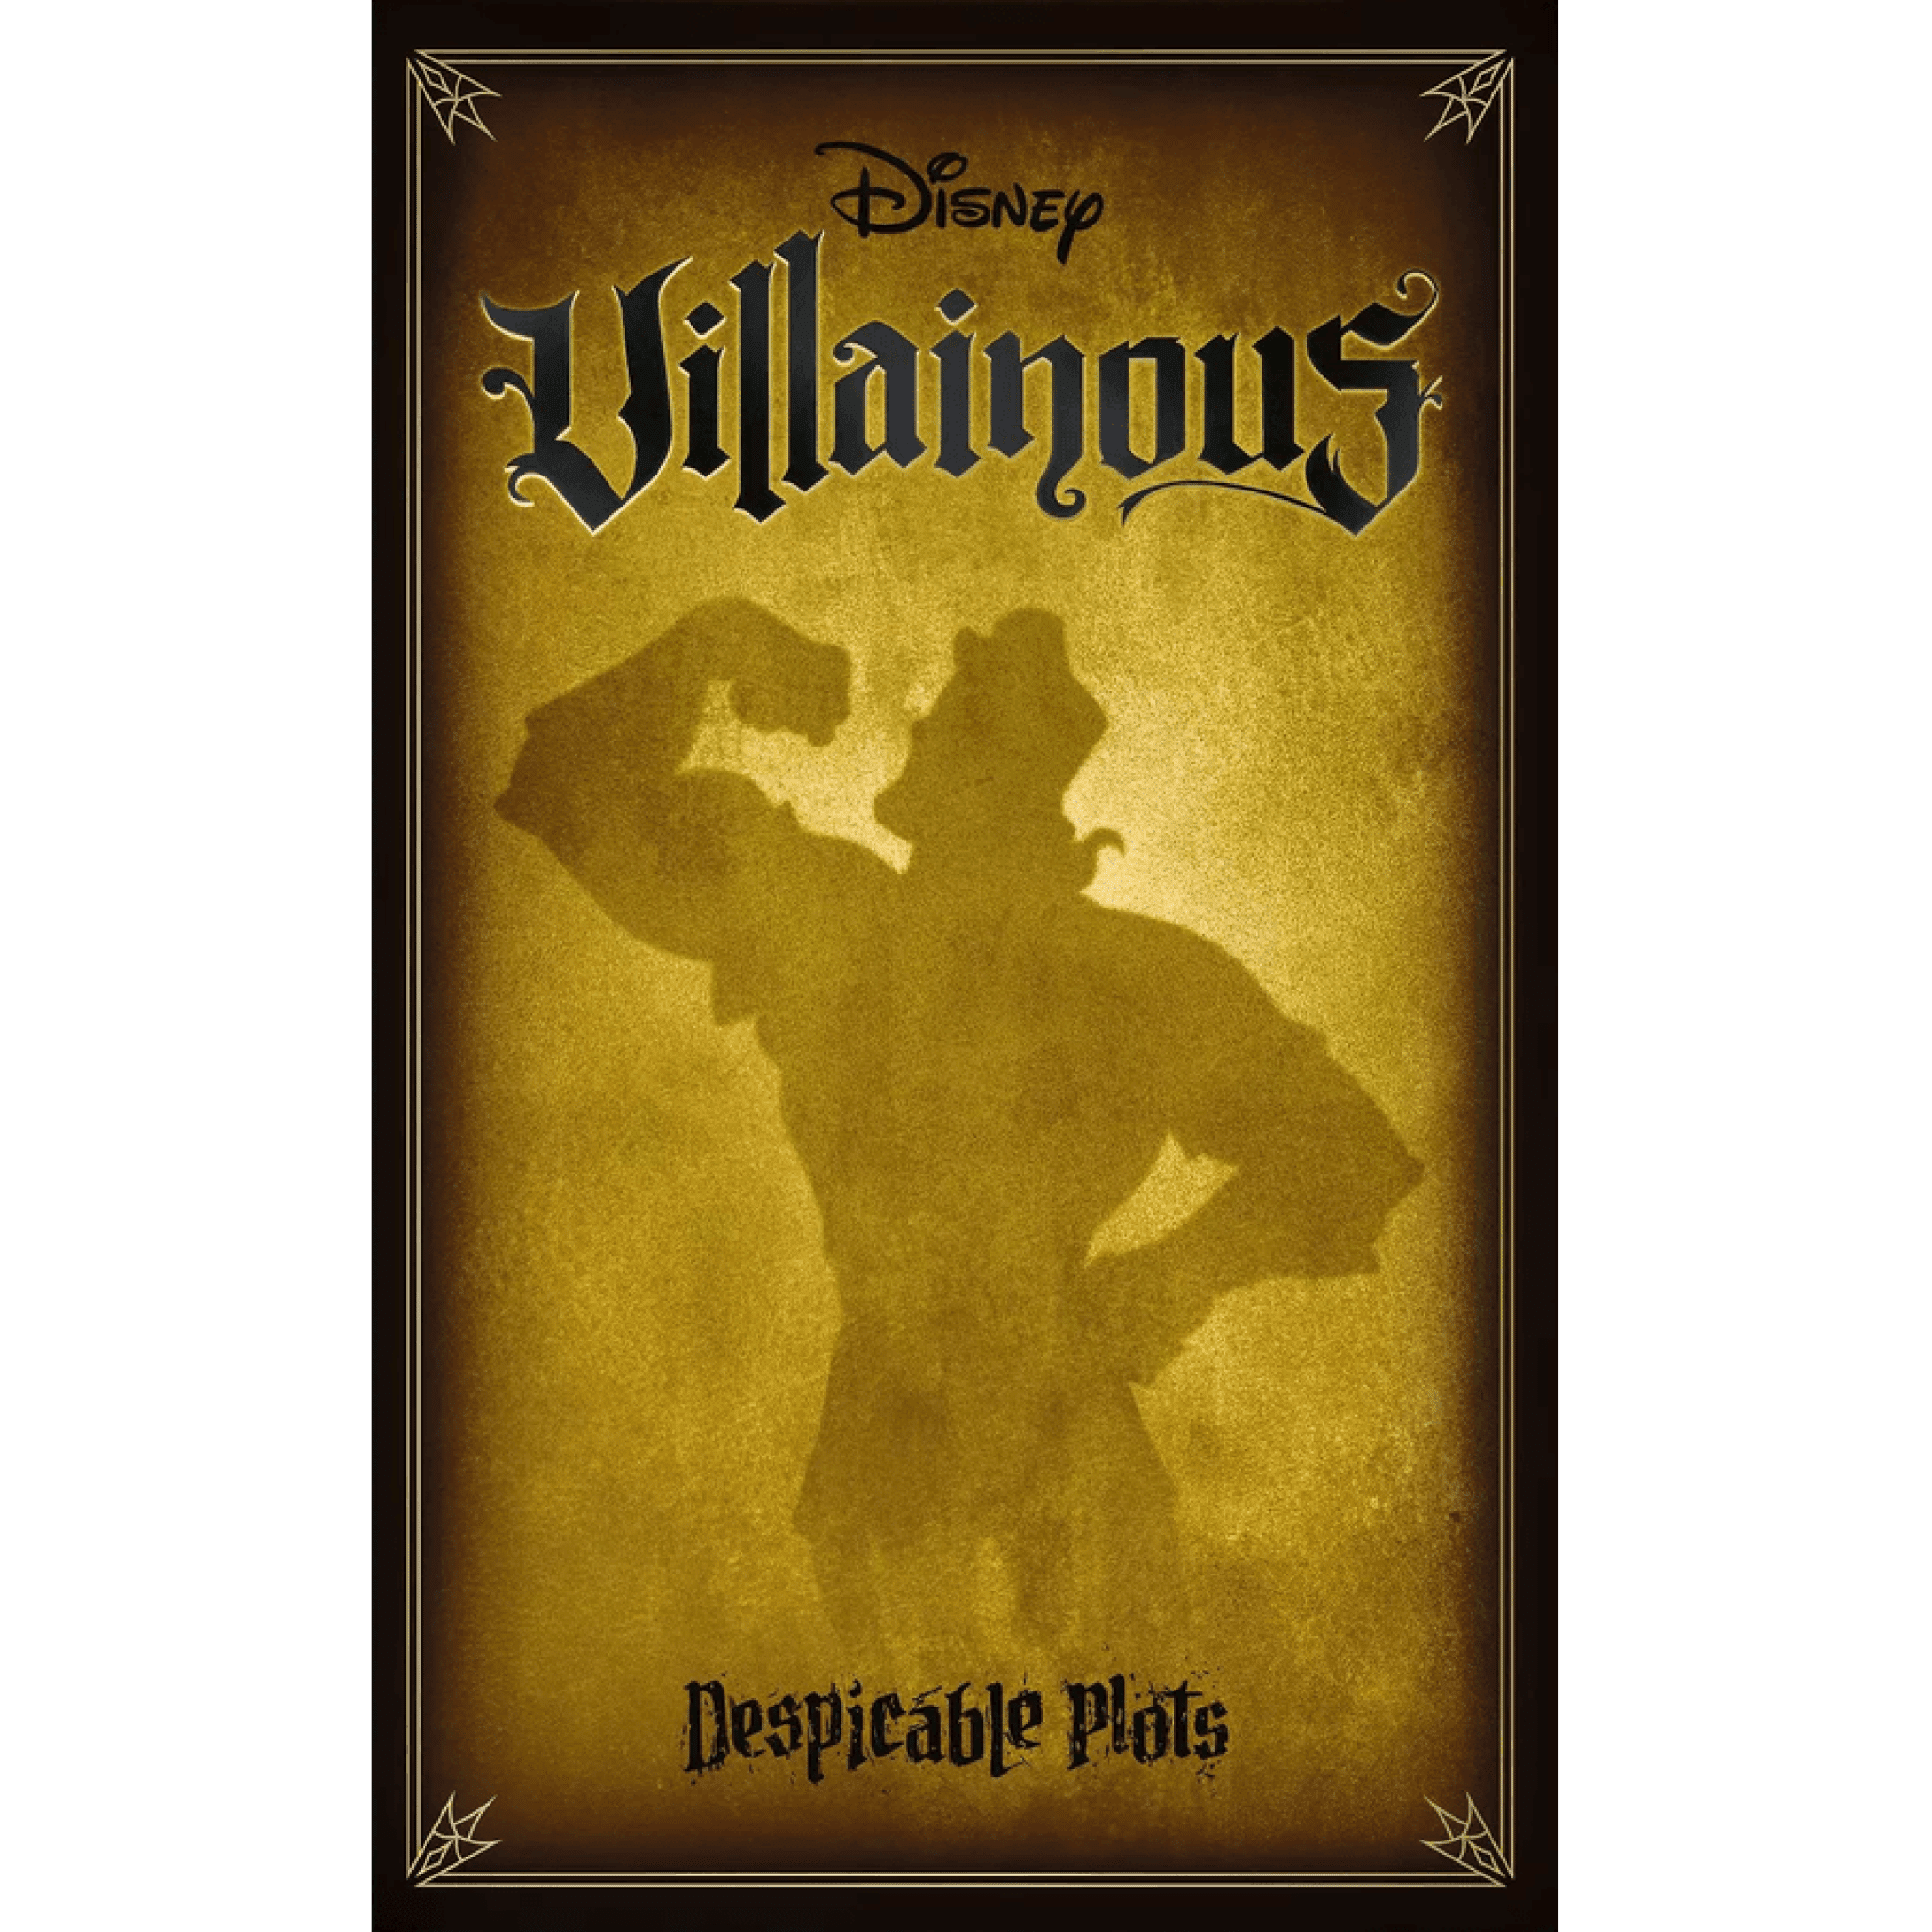 Disney Villainous: Despicable plots | Multizone: Comics And Games